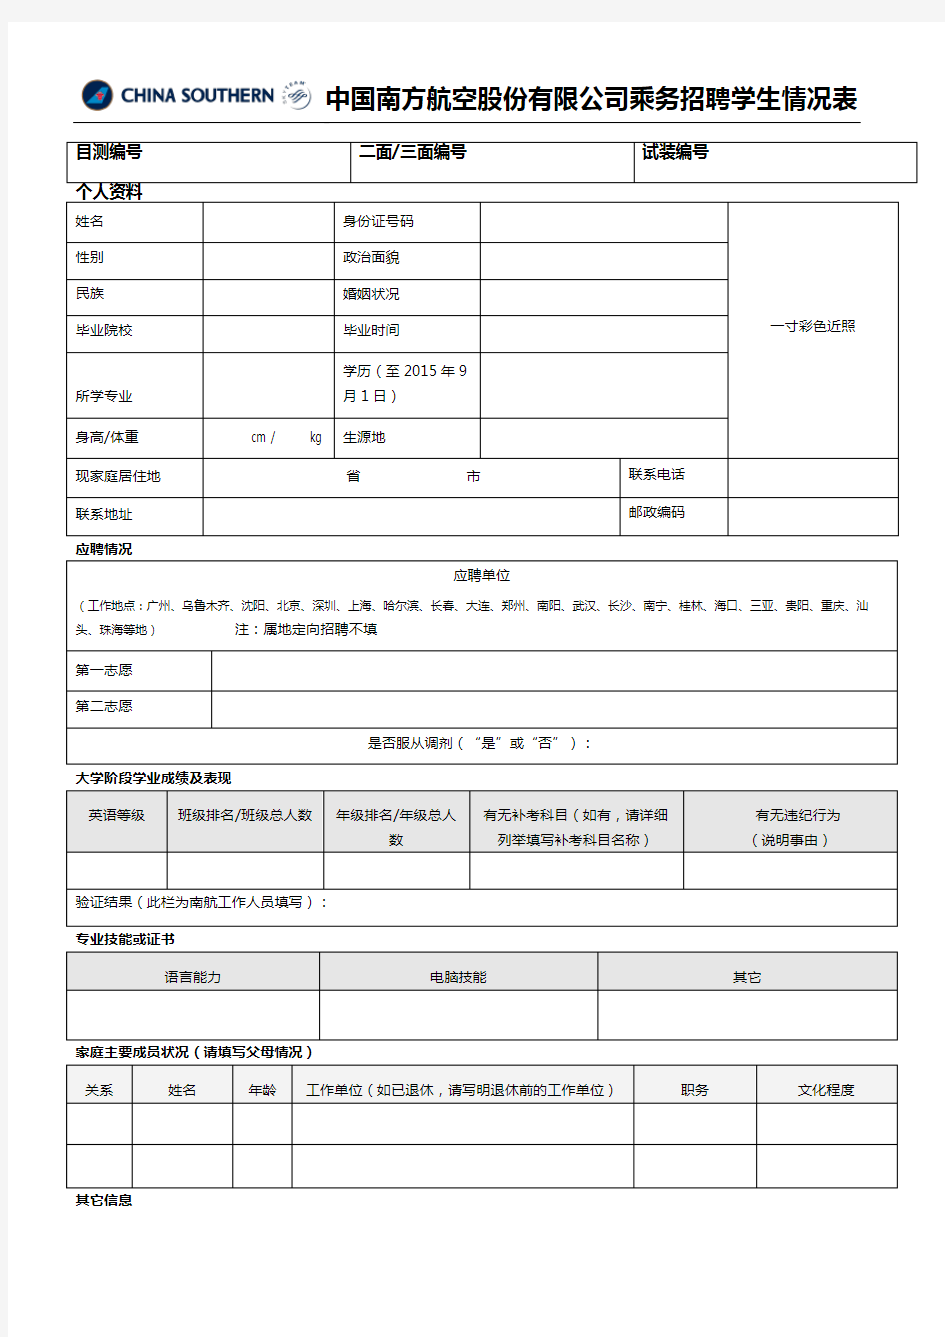 中国南方航空乘务员面试简历表格